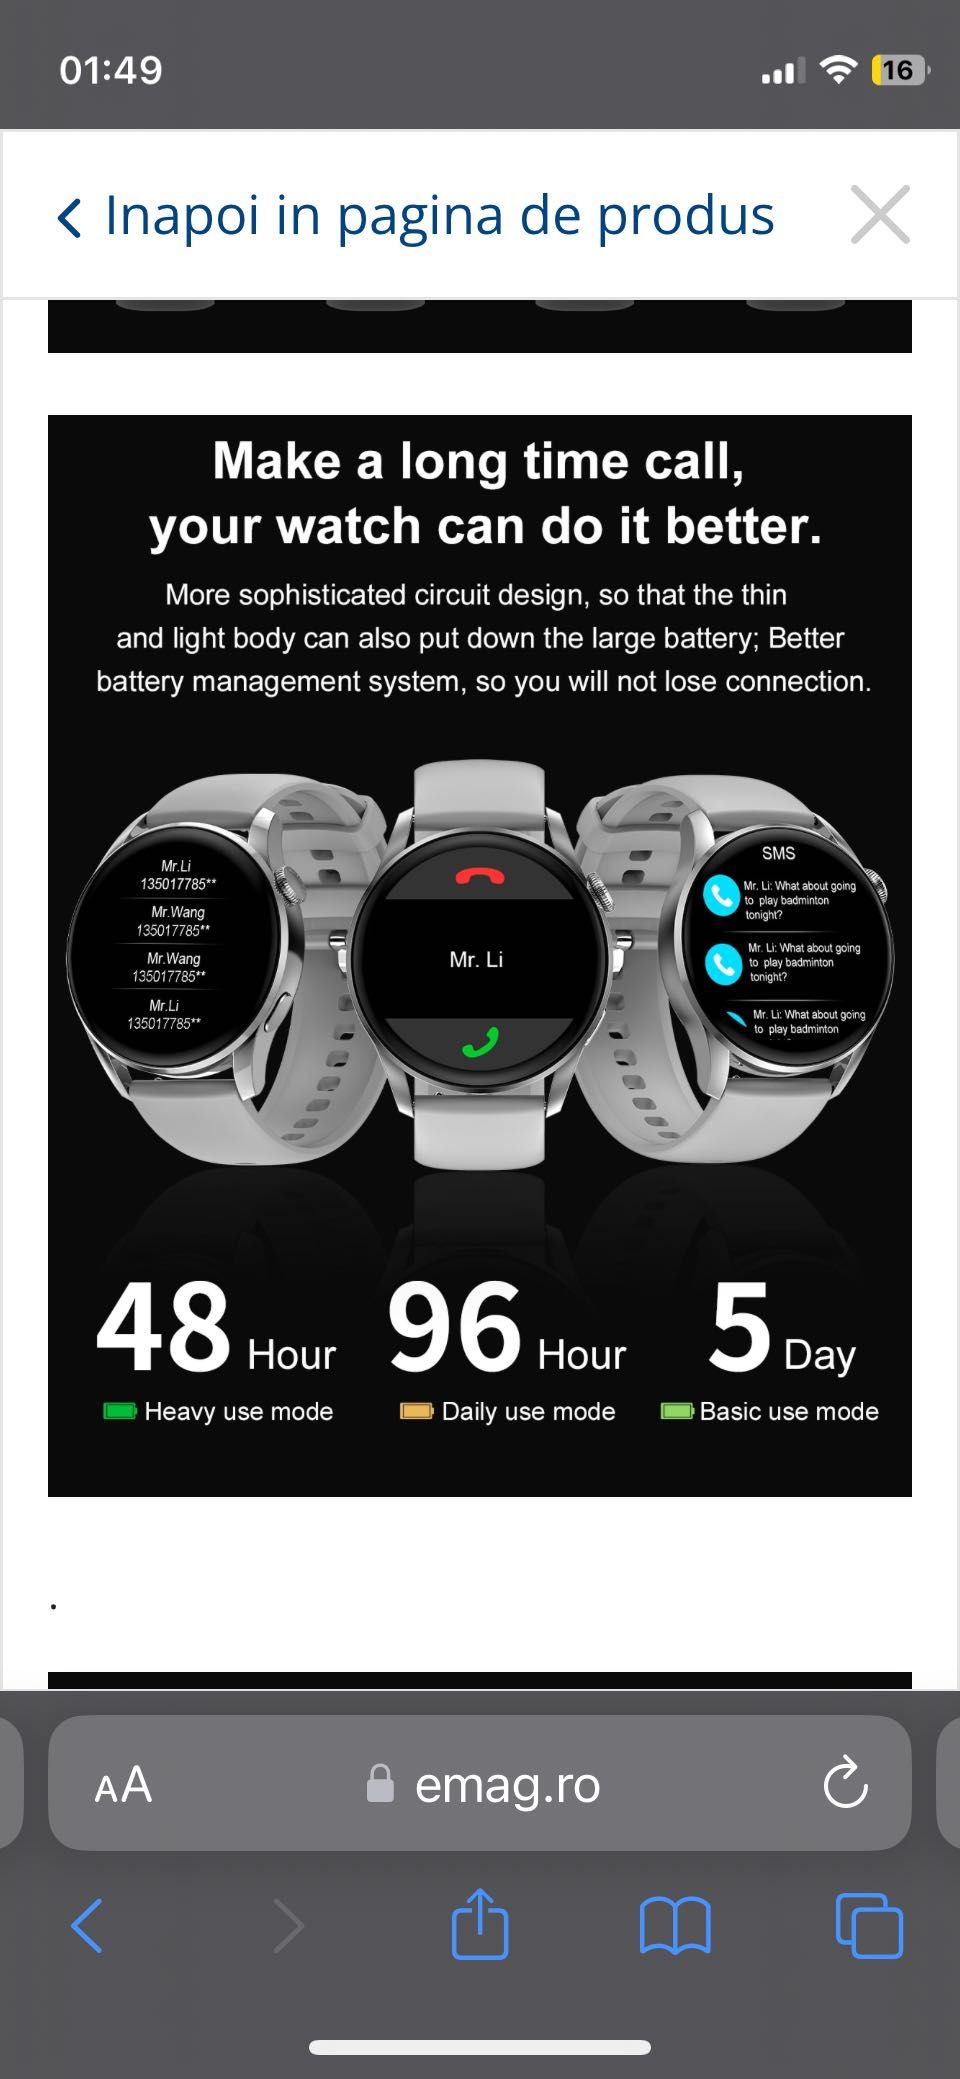 Vând smartwatch aproape nou